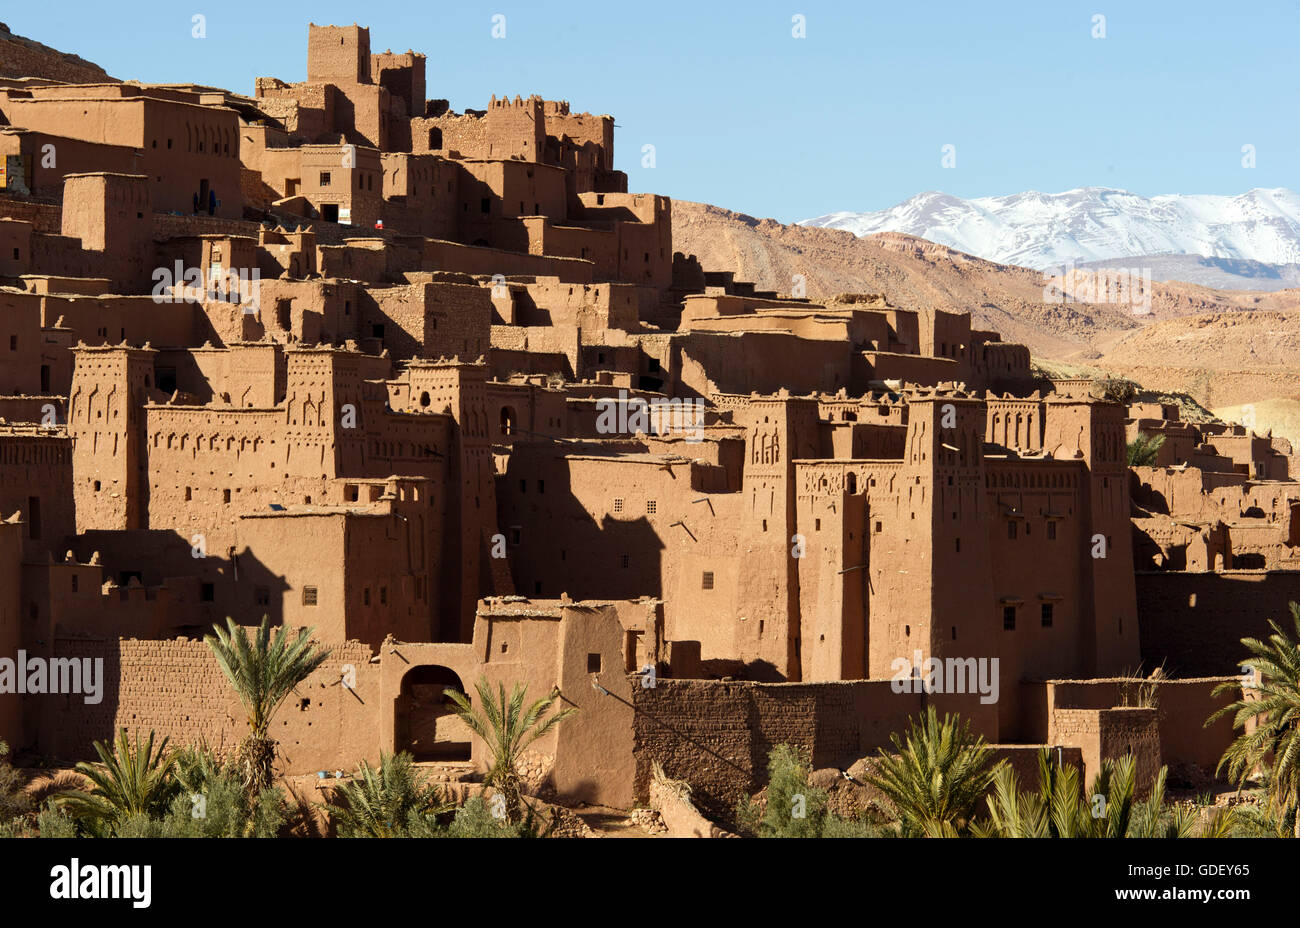 Maroc, Afrique, Kasbah Ait Ben Haddou, l'UNESCO Weltkulturerbe, Ouarzazate, vallée de Kasbahs Banque D'Images